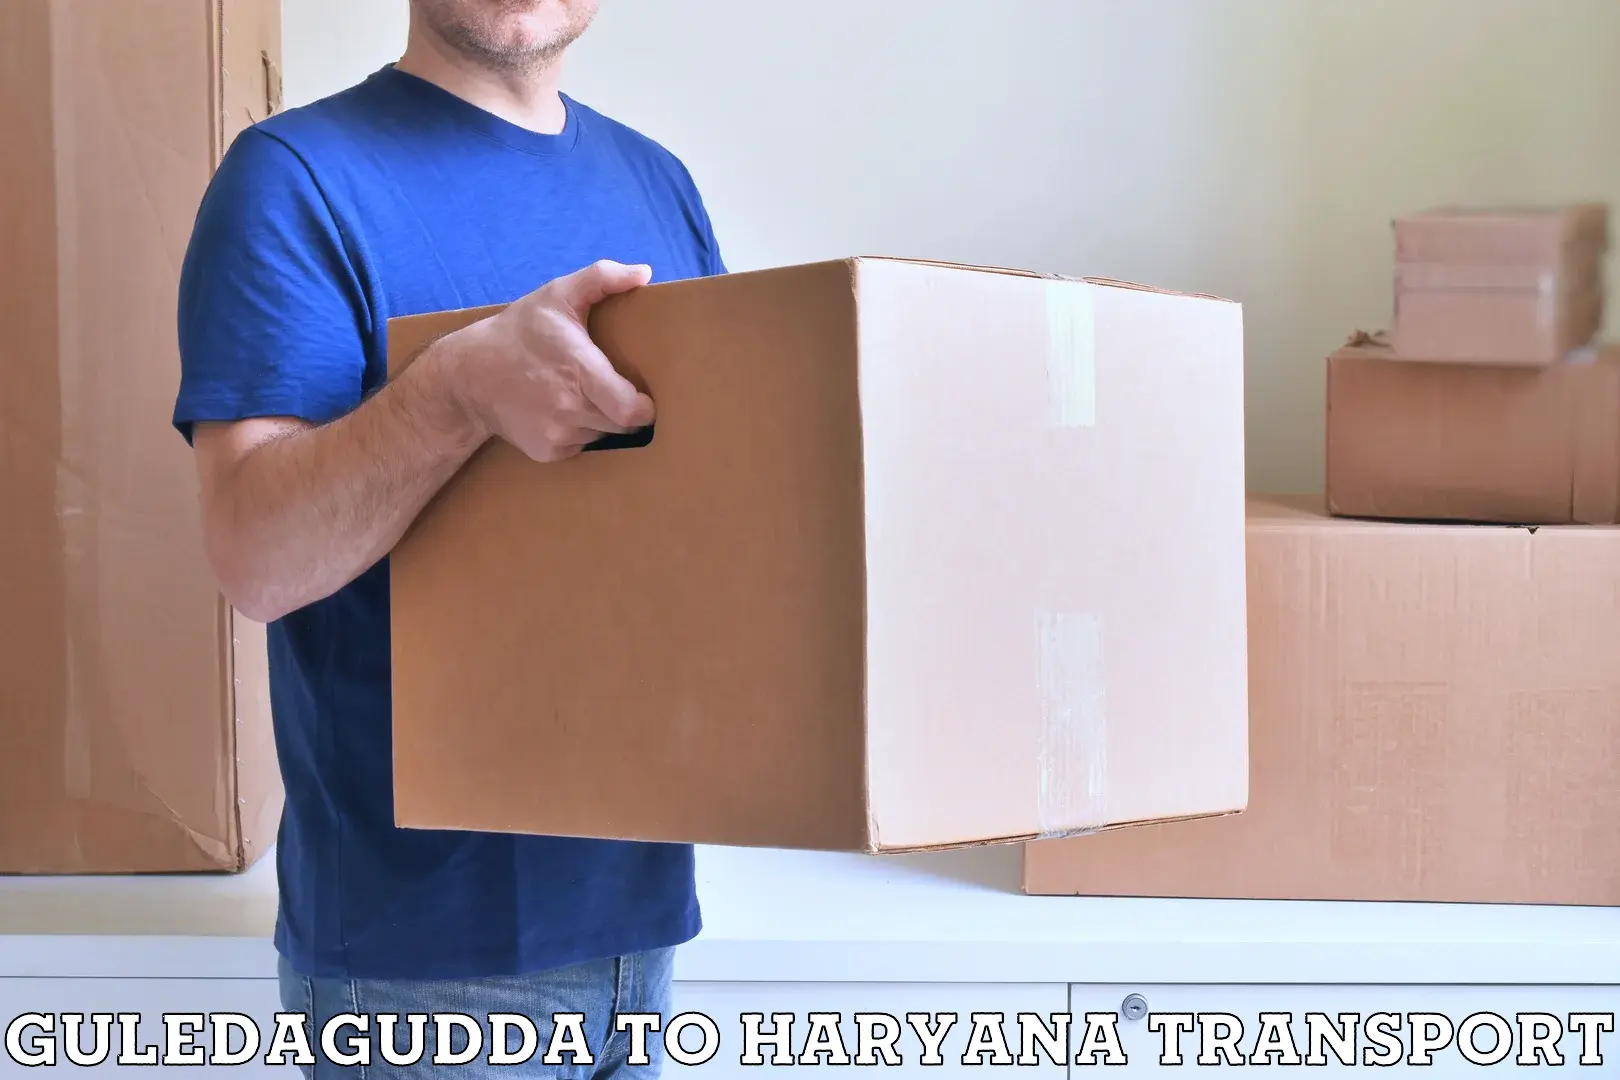 Scooty transport charges Guledagudda to Faridabad